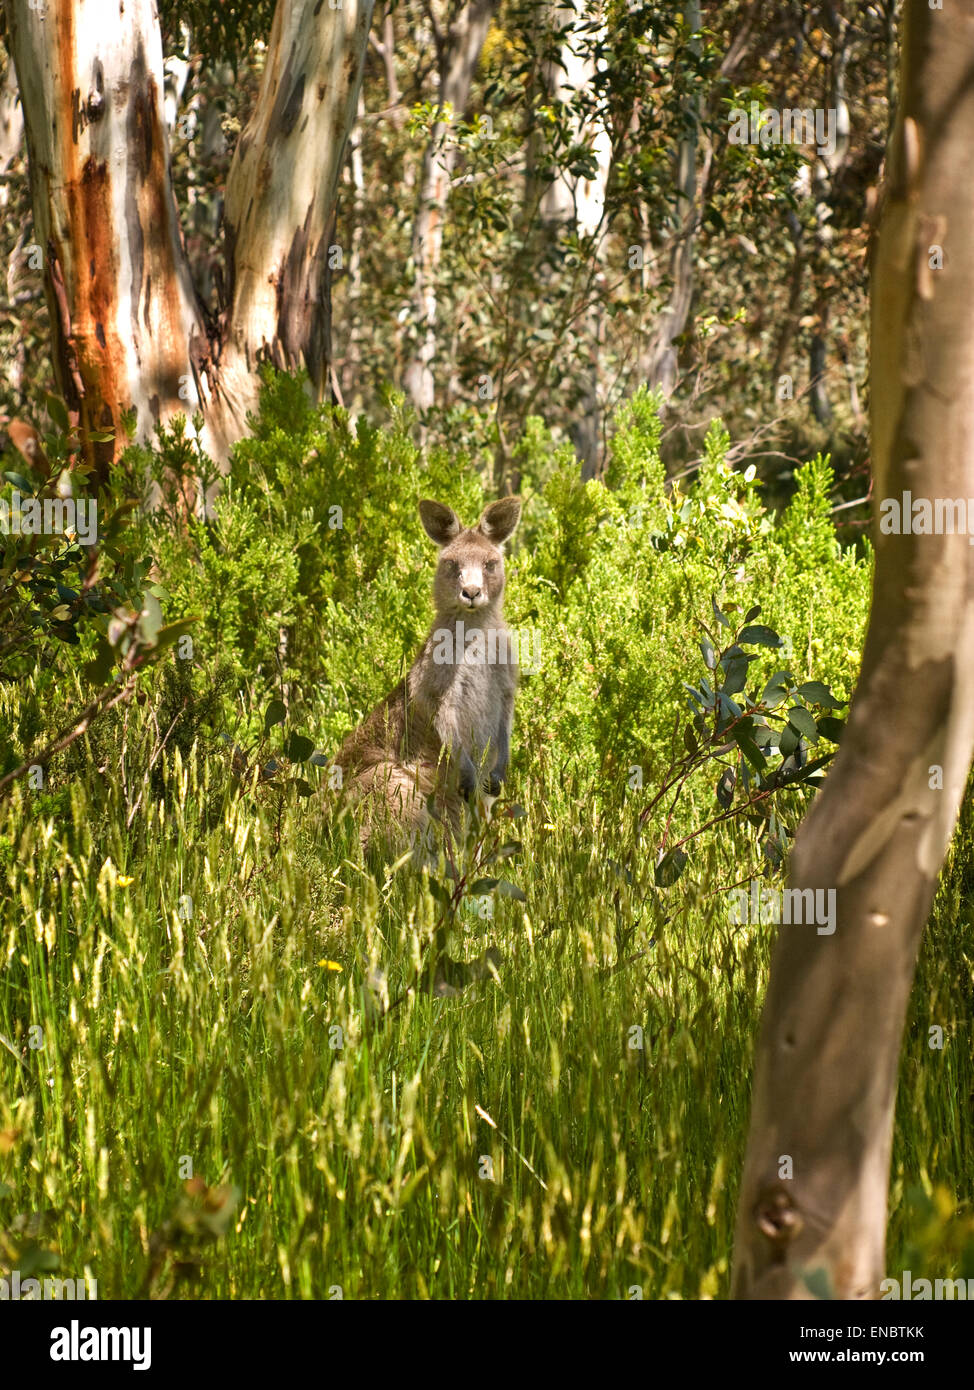 Australia: Eastern Grey kangaroo (Macropus giganteus) in bush, Snowy Mountains, NSW Stock Photo